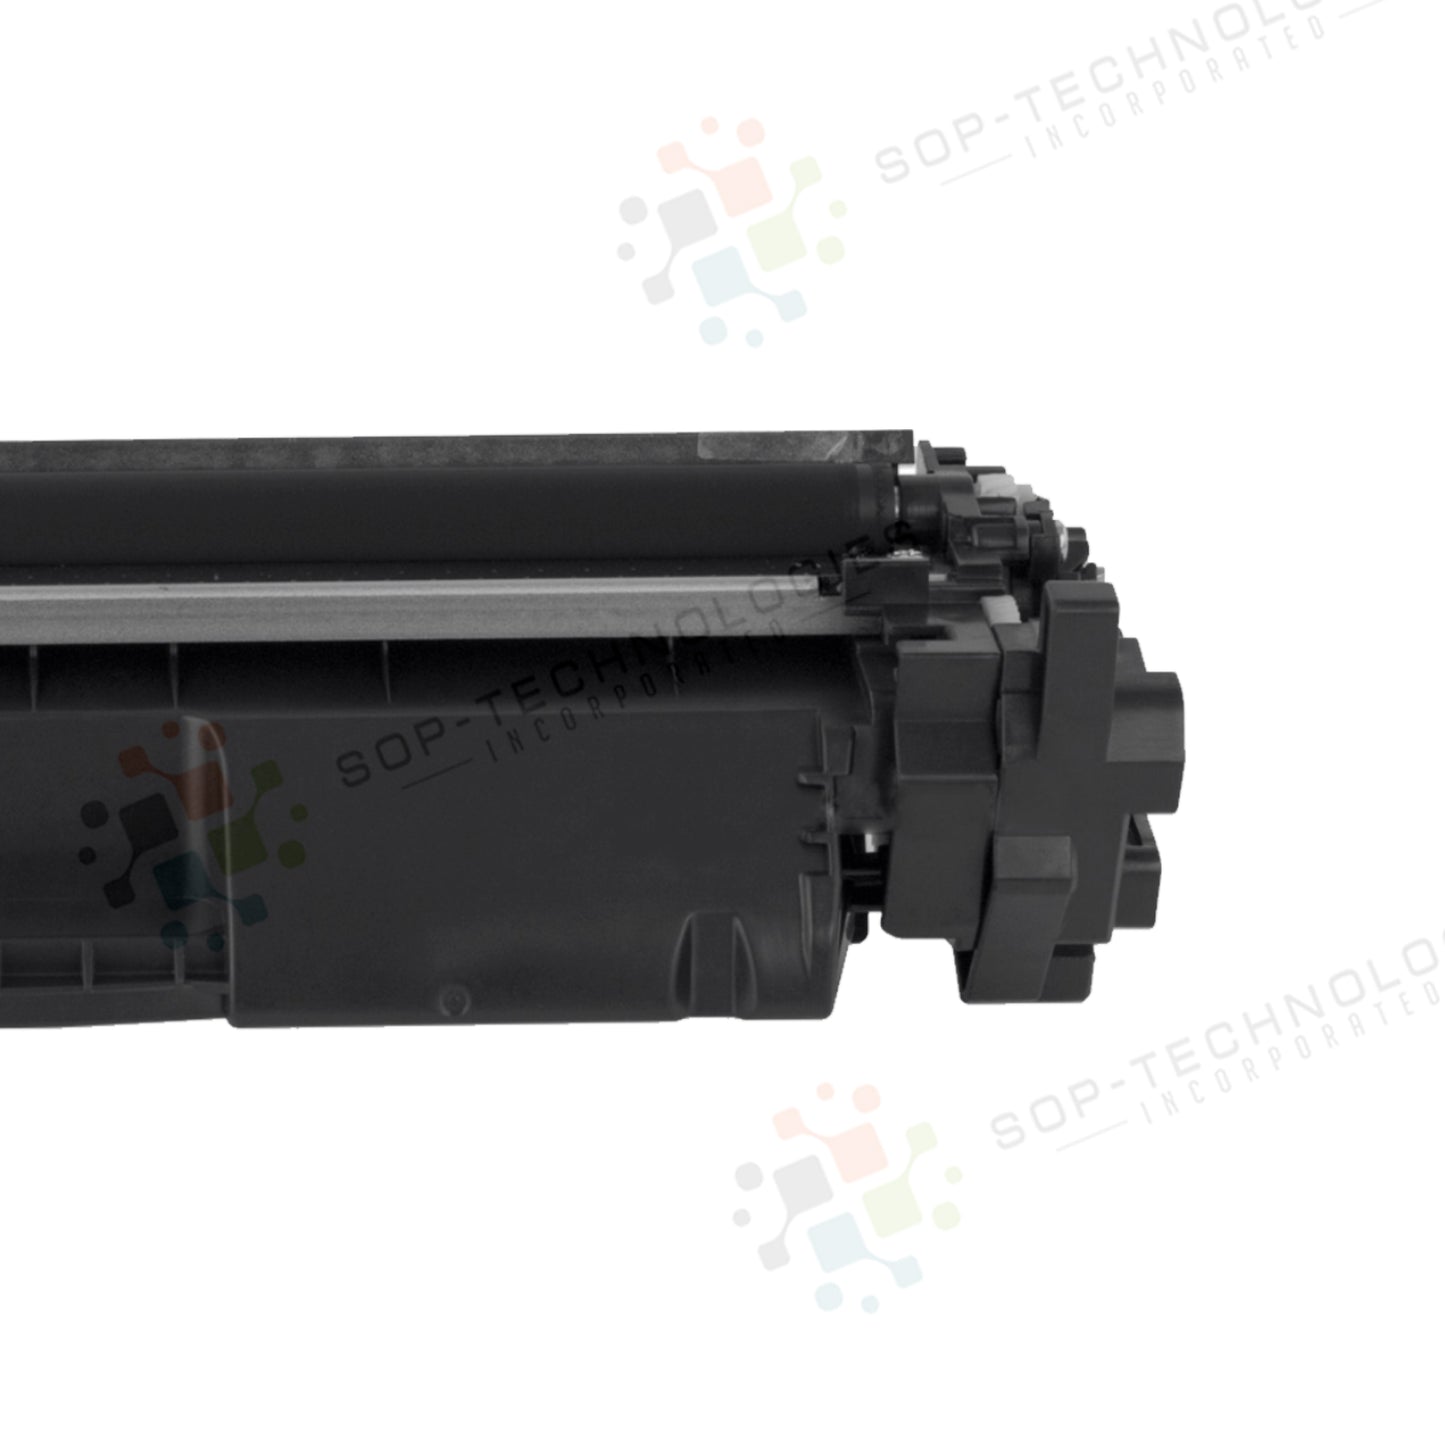 5pk Compatible Toner Cartridge Replacement for Canon imageCLASS LBP162dw - SOP-TECHNOLOGIES, INC.